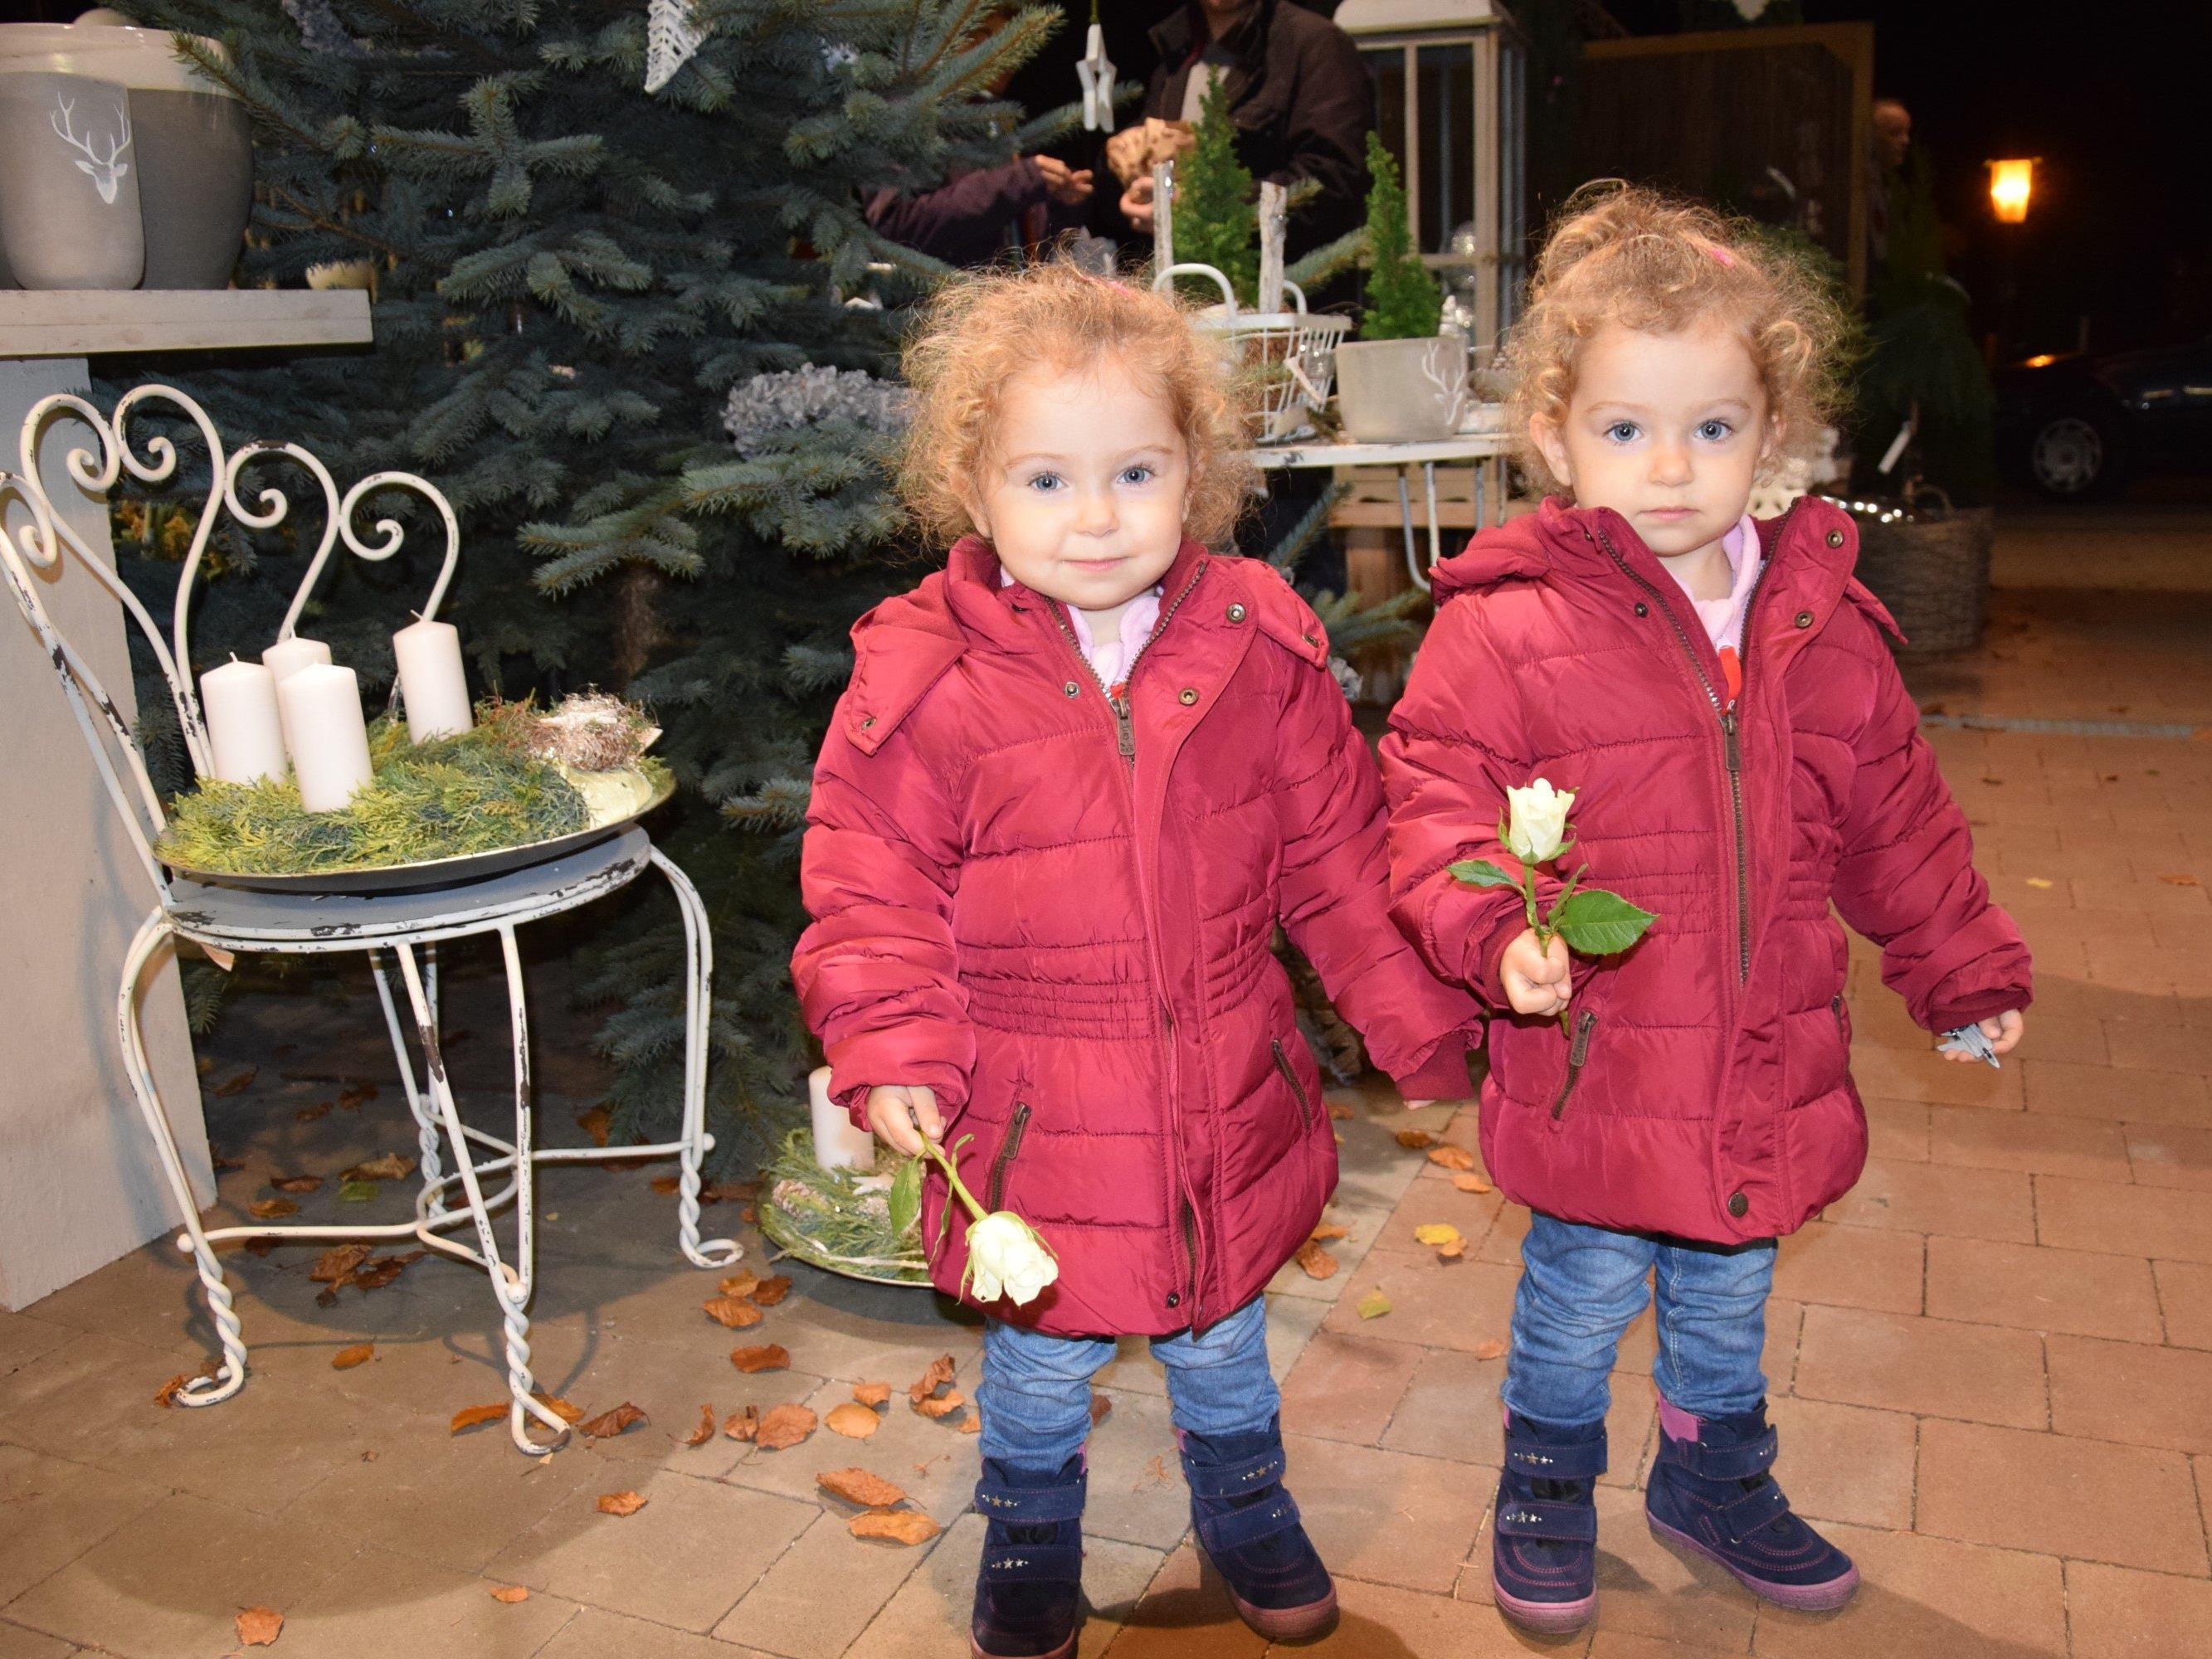 Auch die dreijährigen Zwillinge Uliana & Melanie aus Kriessern kamen mit ihrem Papa zur Adventausstellung...